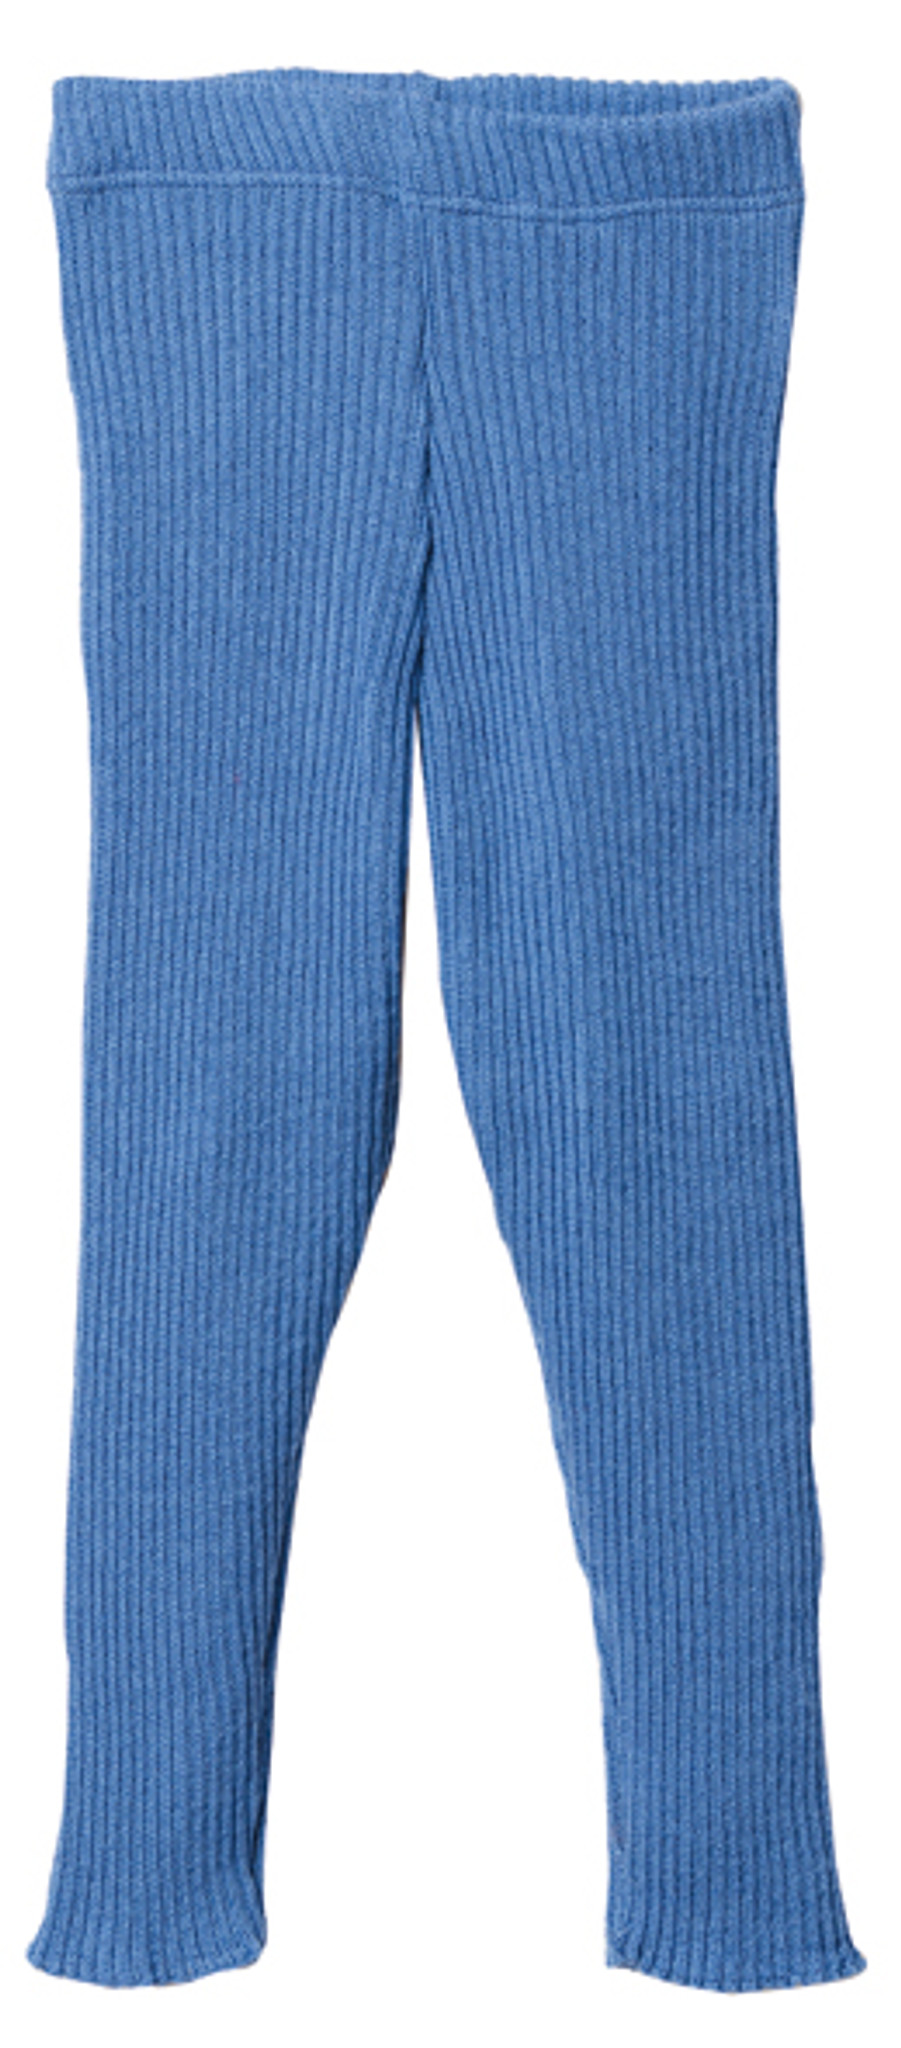 Fine-knit Leggings - Light gray melange - Ladies